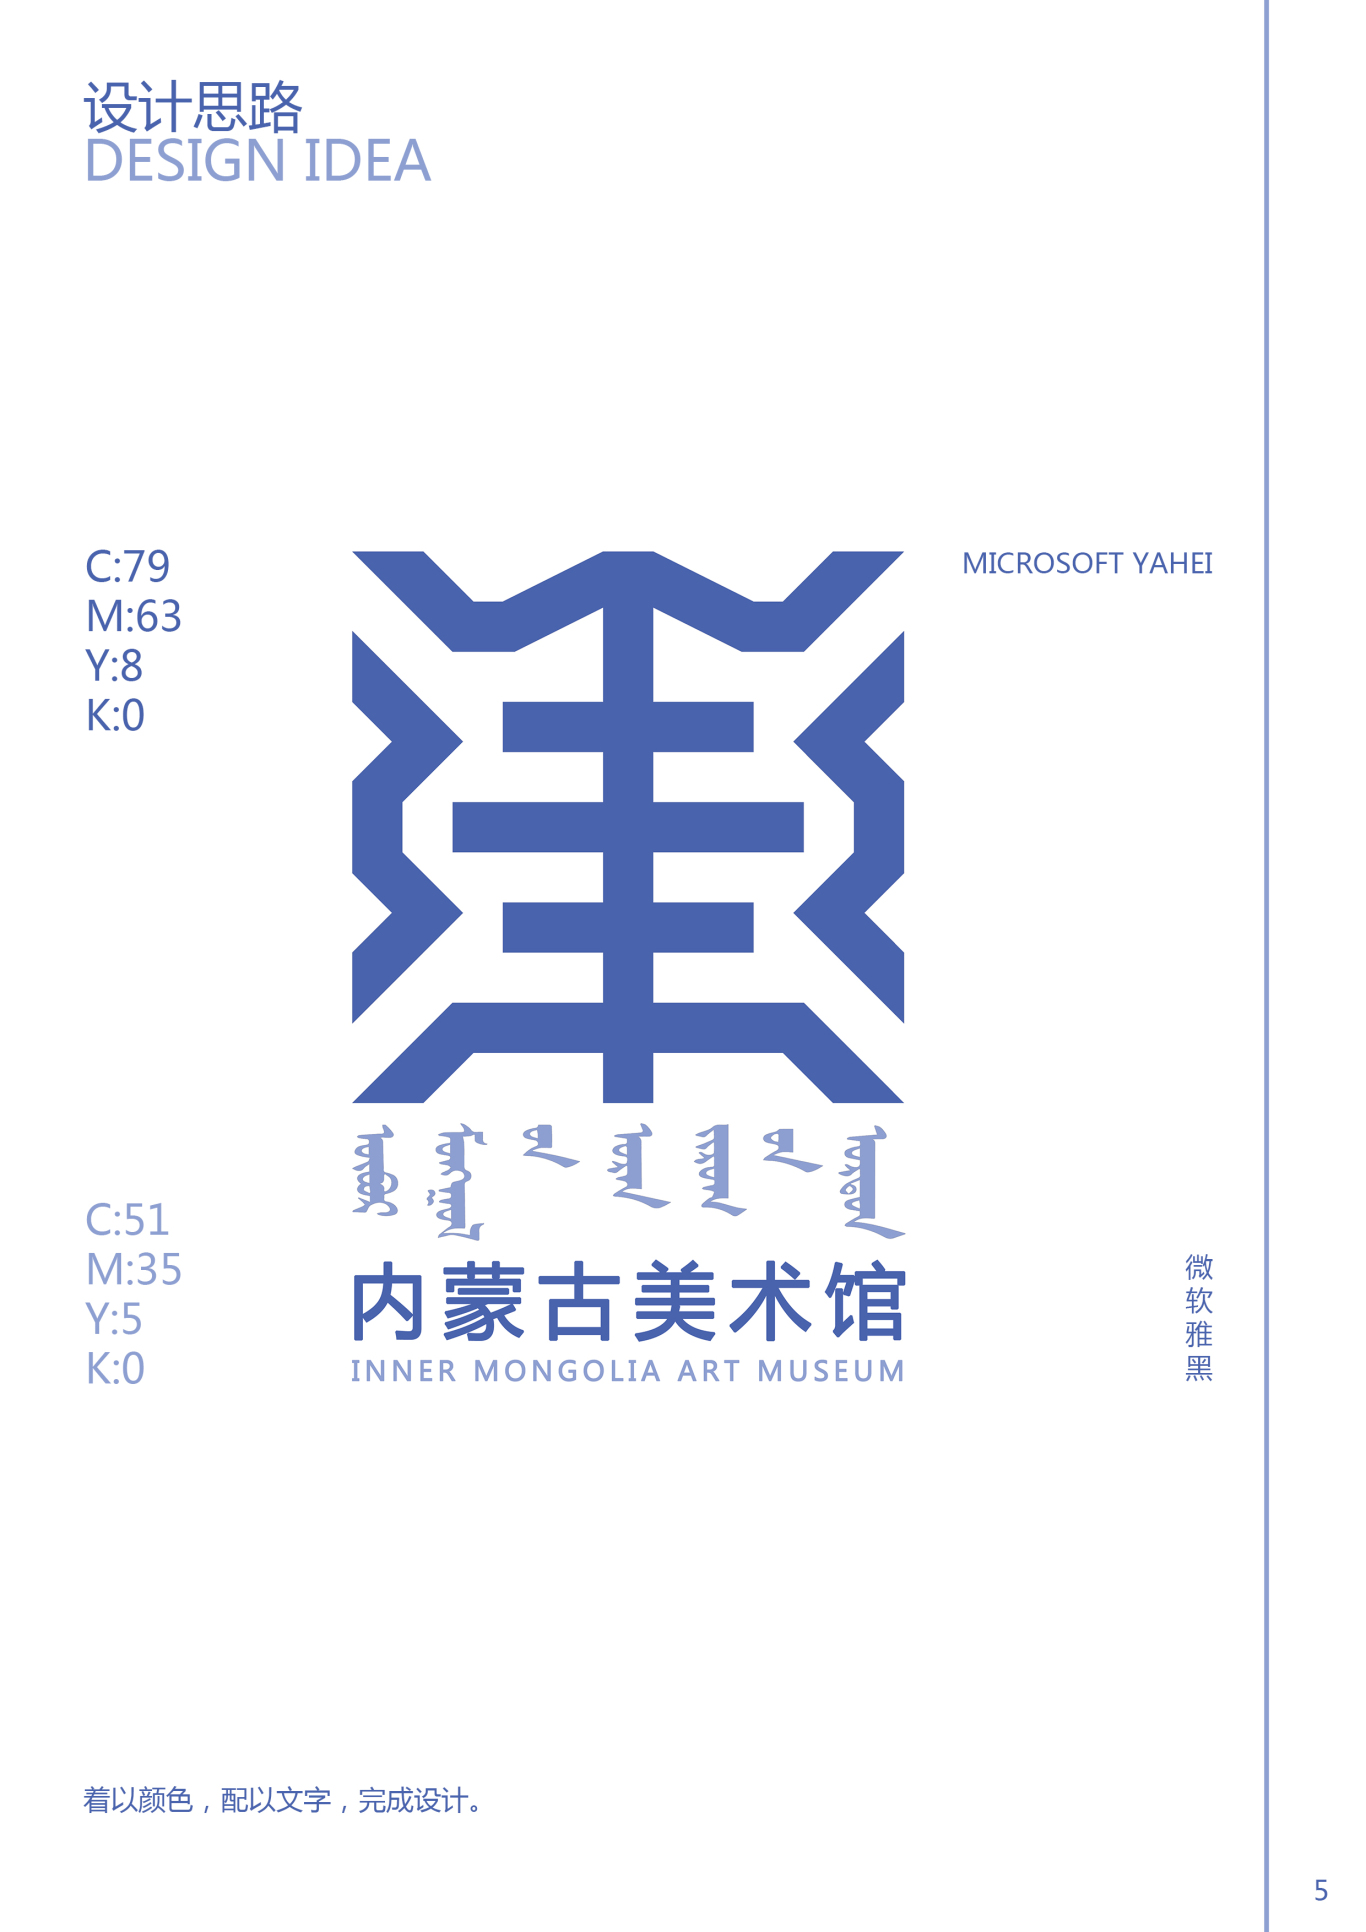 内蒙古美术馆logo图5